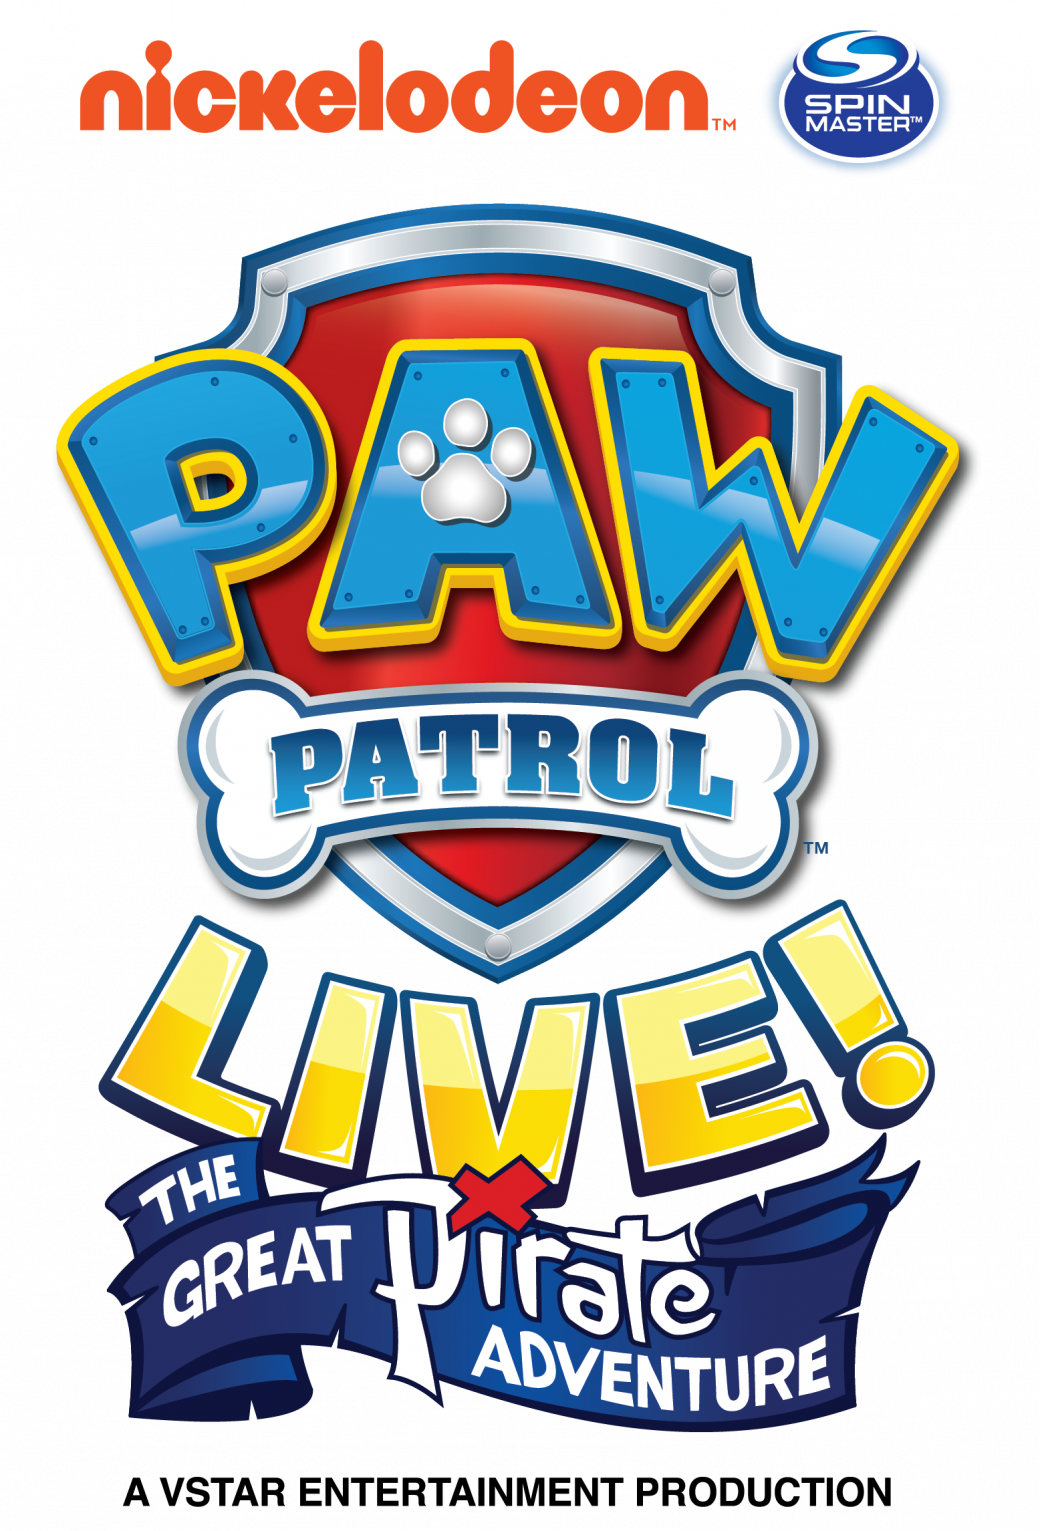 Paw-Patrol-Live